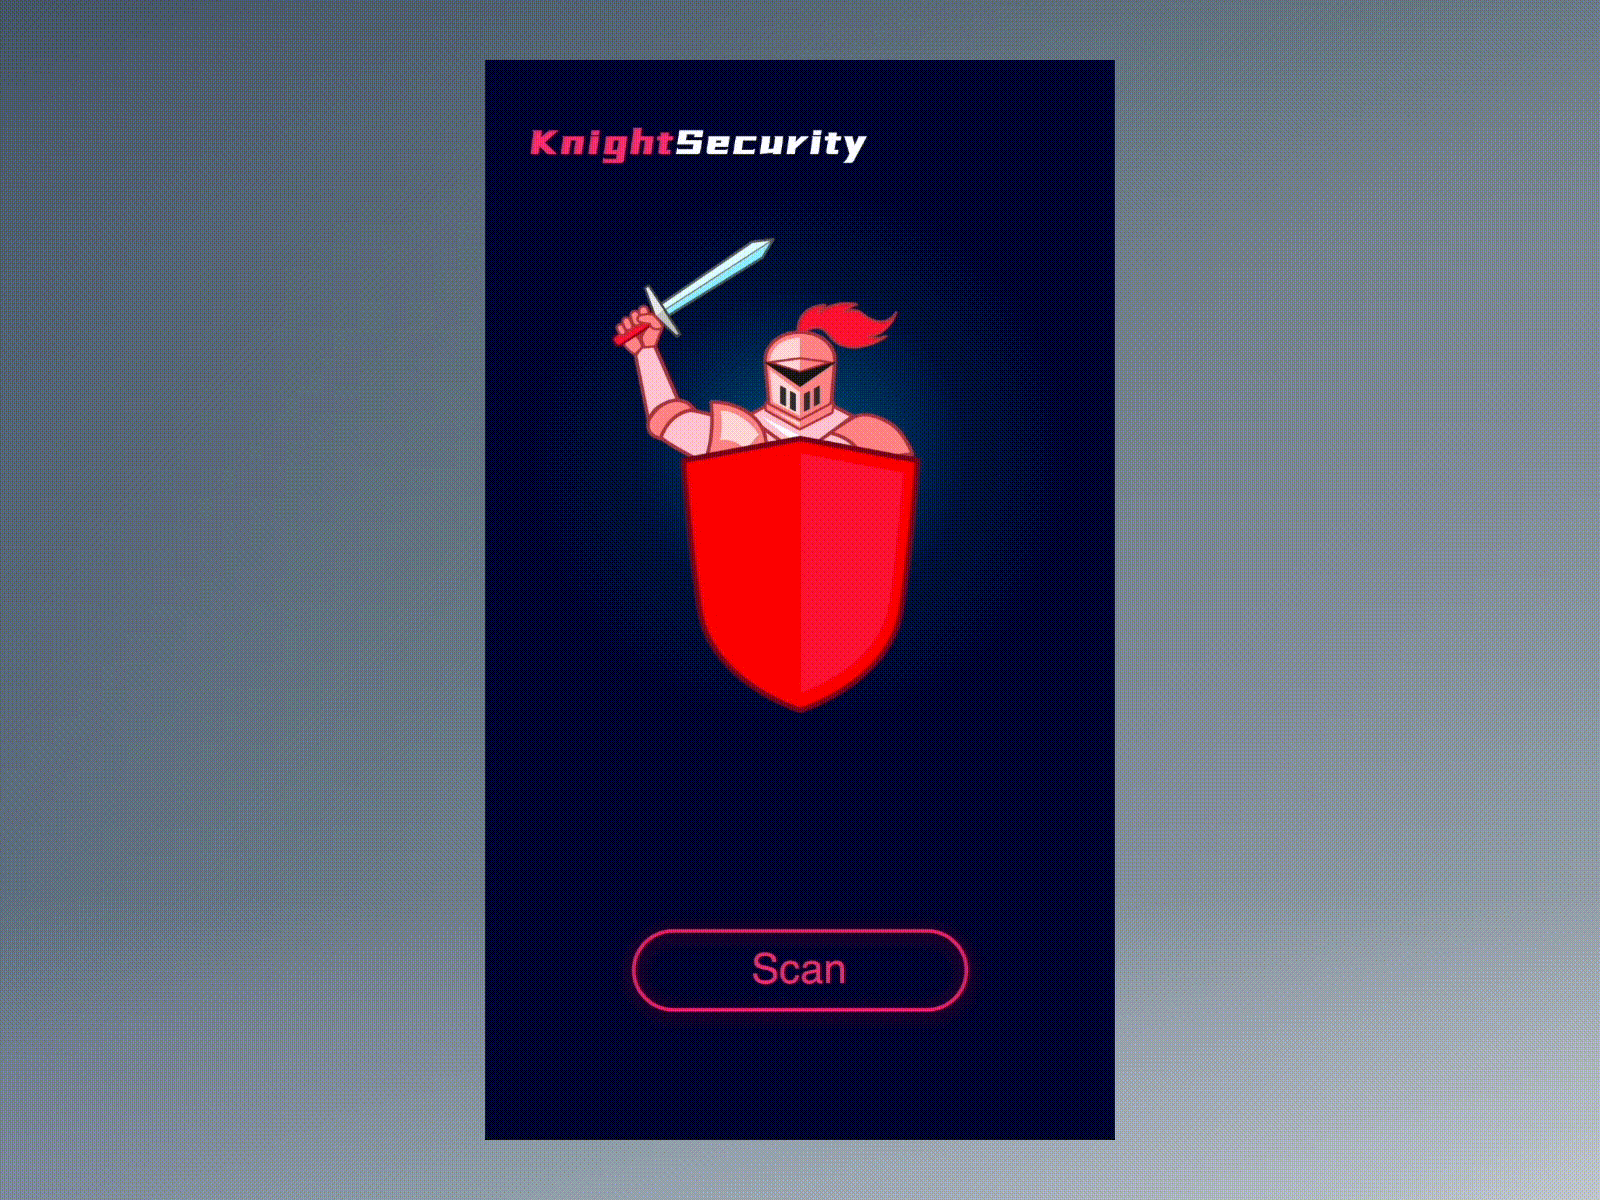 Knight Security App UI app design illustration knight security ui uiux